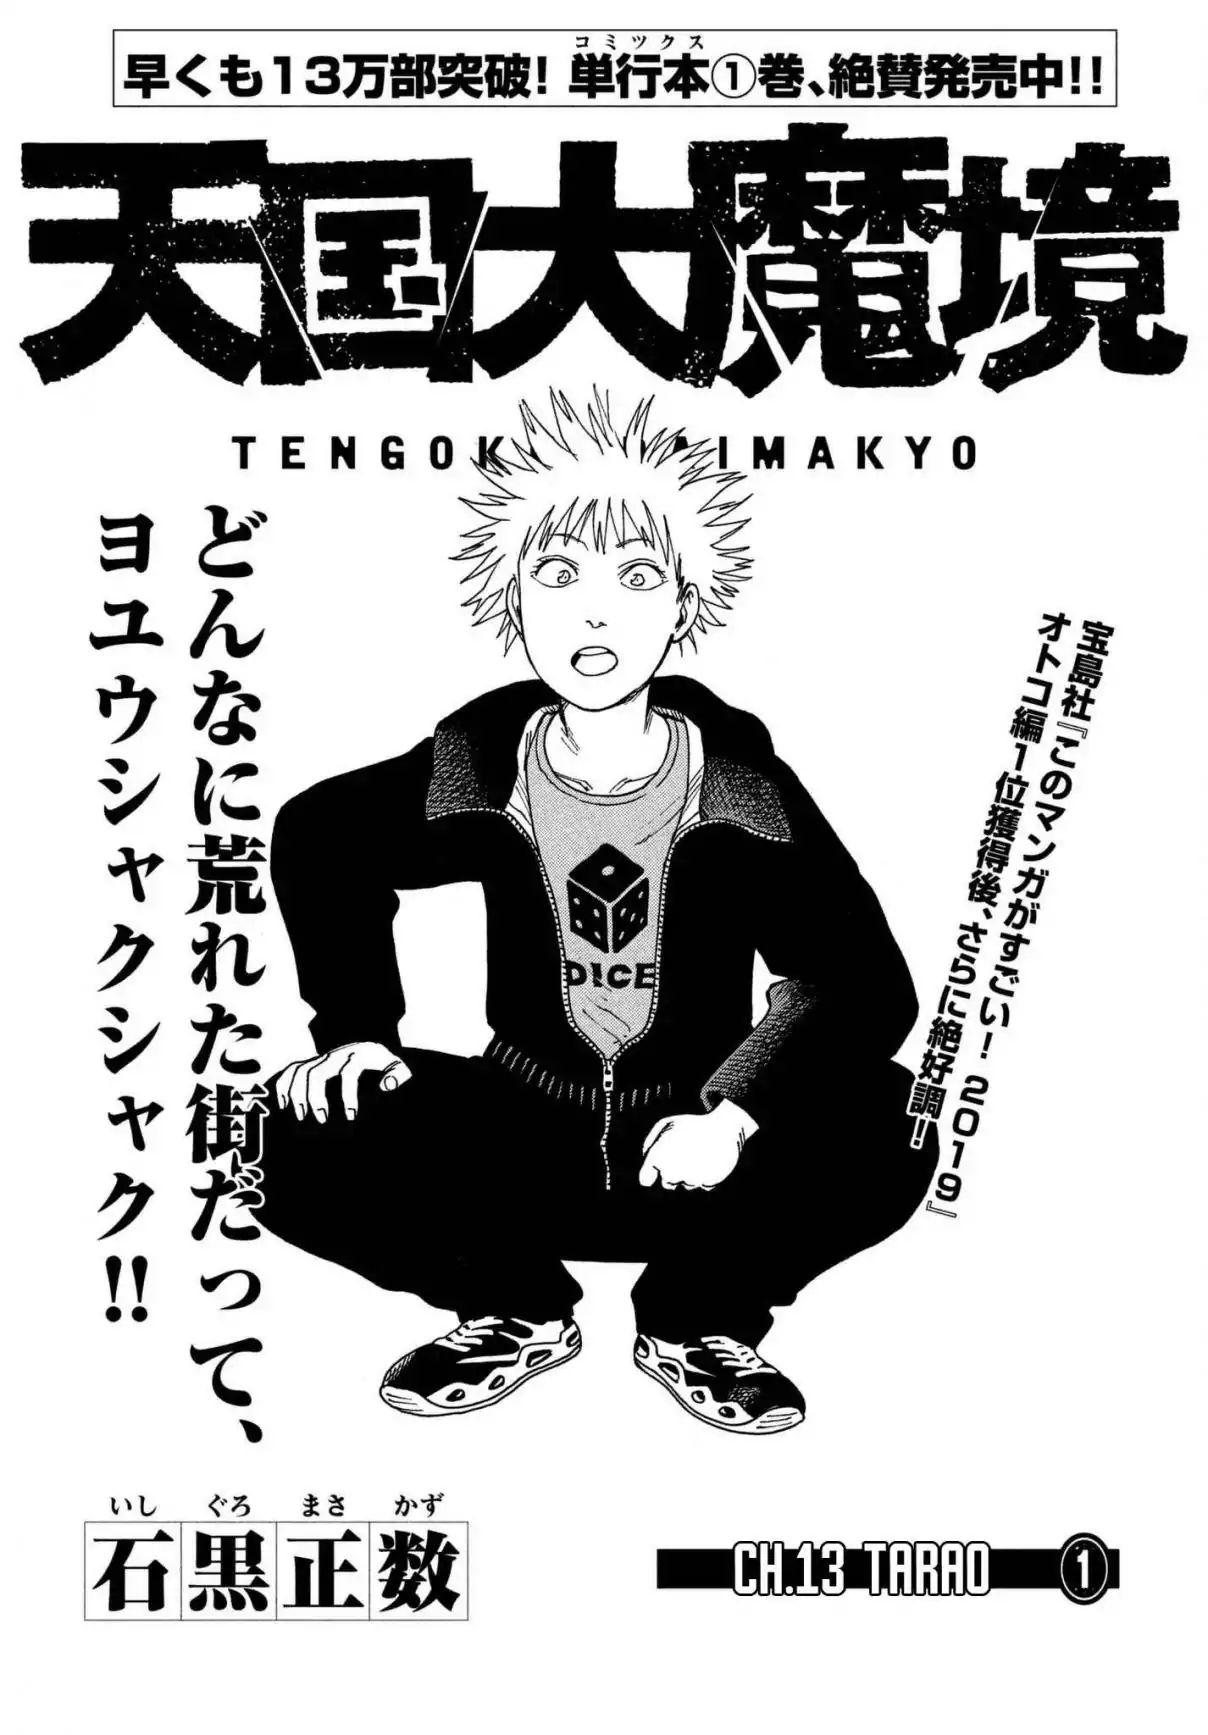 Read Tengoku Daimakyou by Ishiguro Masakazu Free On MangaKakalot - Chapter  41: Garbage day